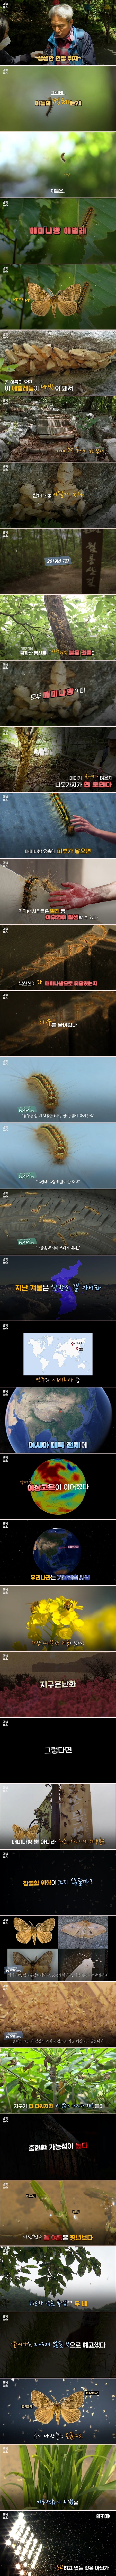 북한산 점령한 애벌레의 정체 (2).jpg